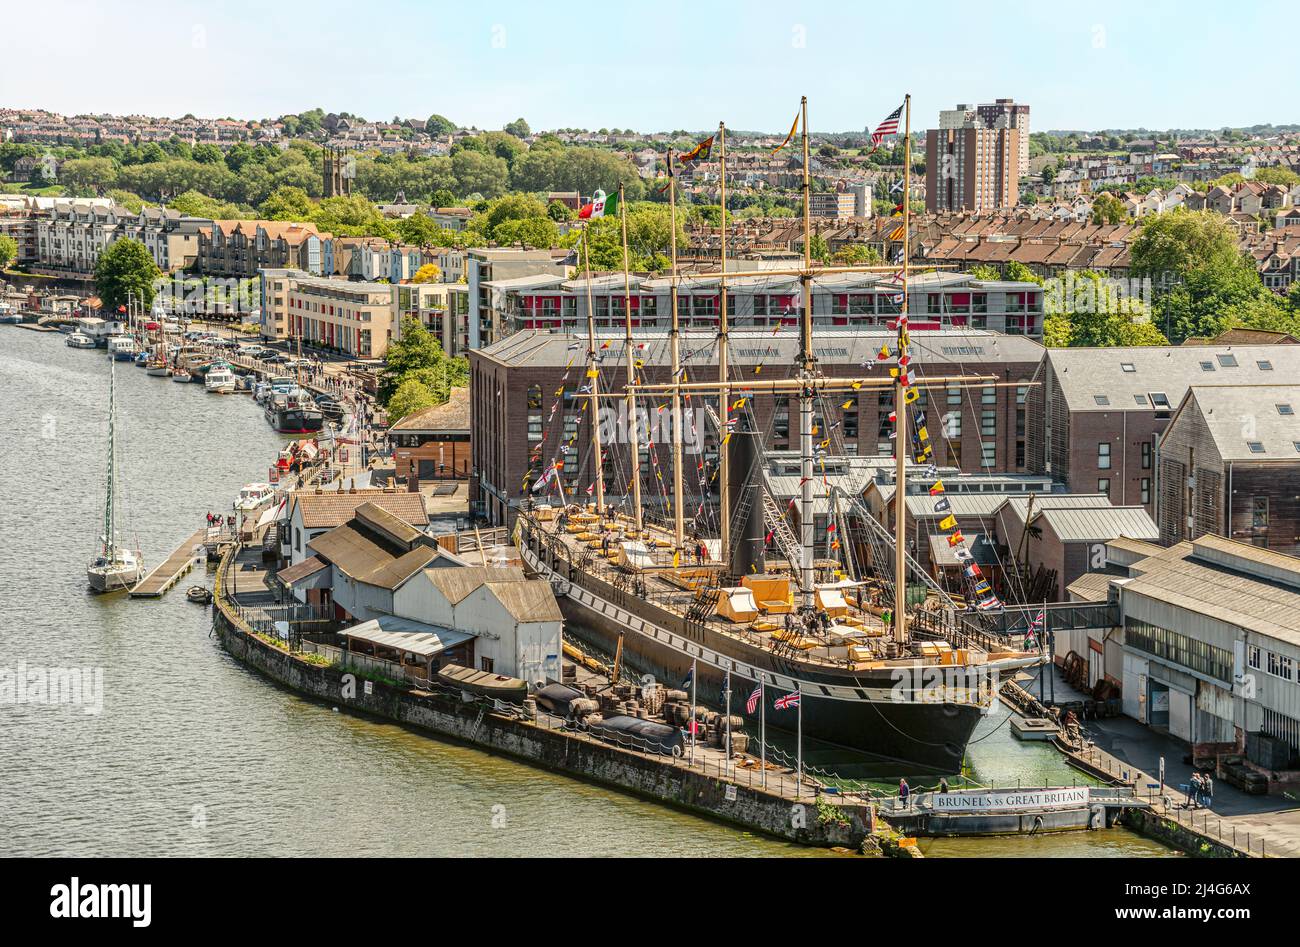 Brunels SS Great Britain ist ein Museumsschiff und ehemalige Passagierdampfer am Hafen von Bristol, Somerset, England, UK Stockfoto